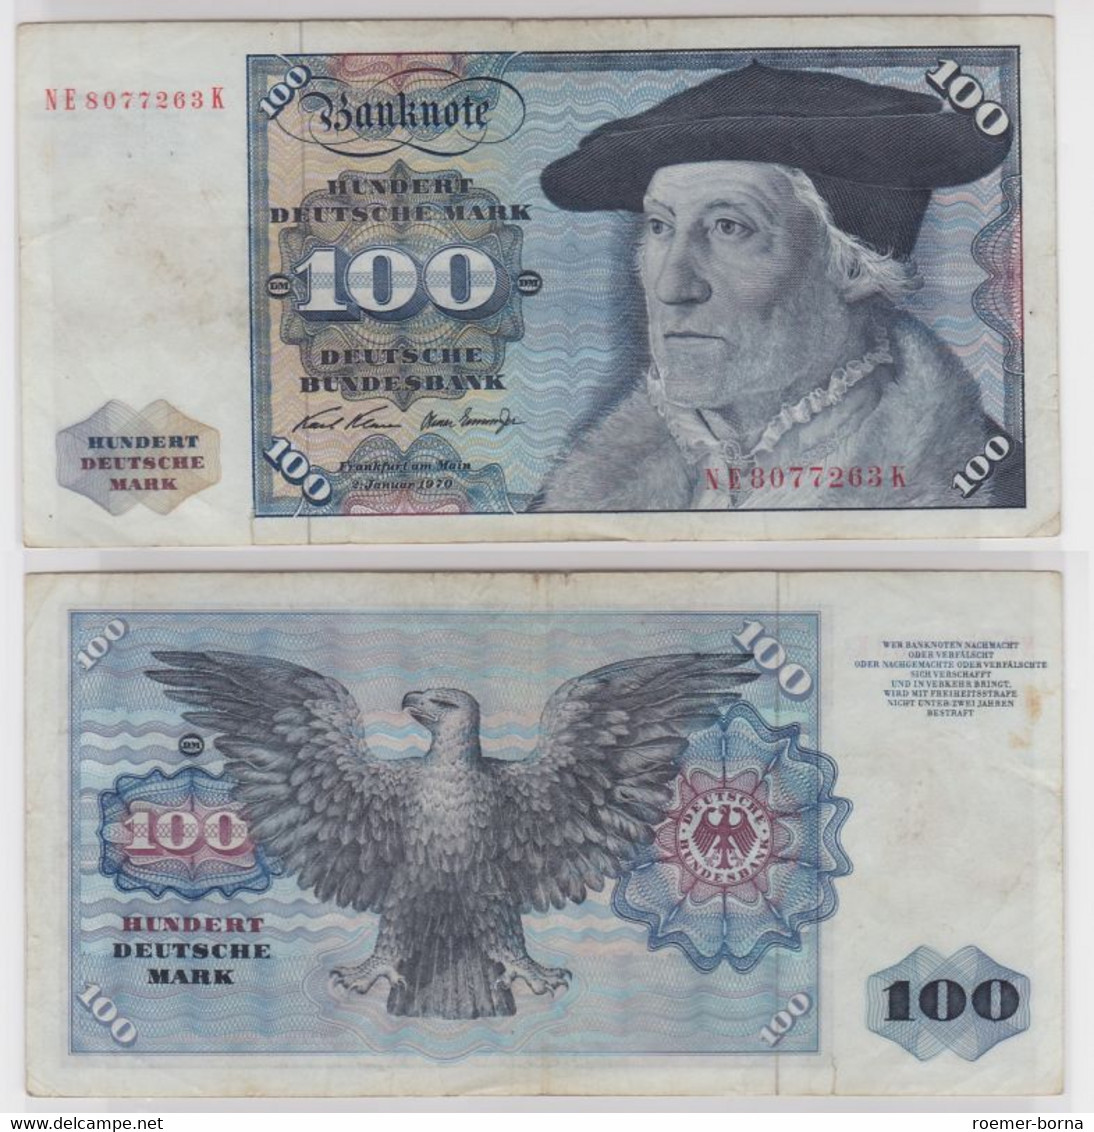 T147238 Banknote 100 DM Deutsche Mark Ro. 273b Schein 2.Jan 1970 KN NE 8077263 K - 100 Deutsche Mark